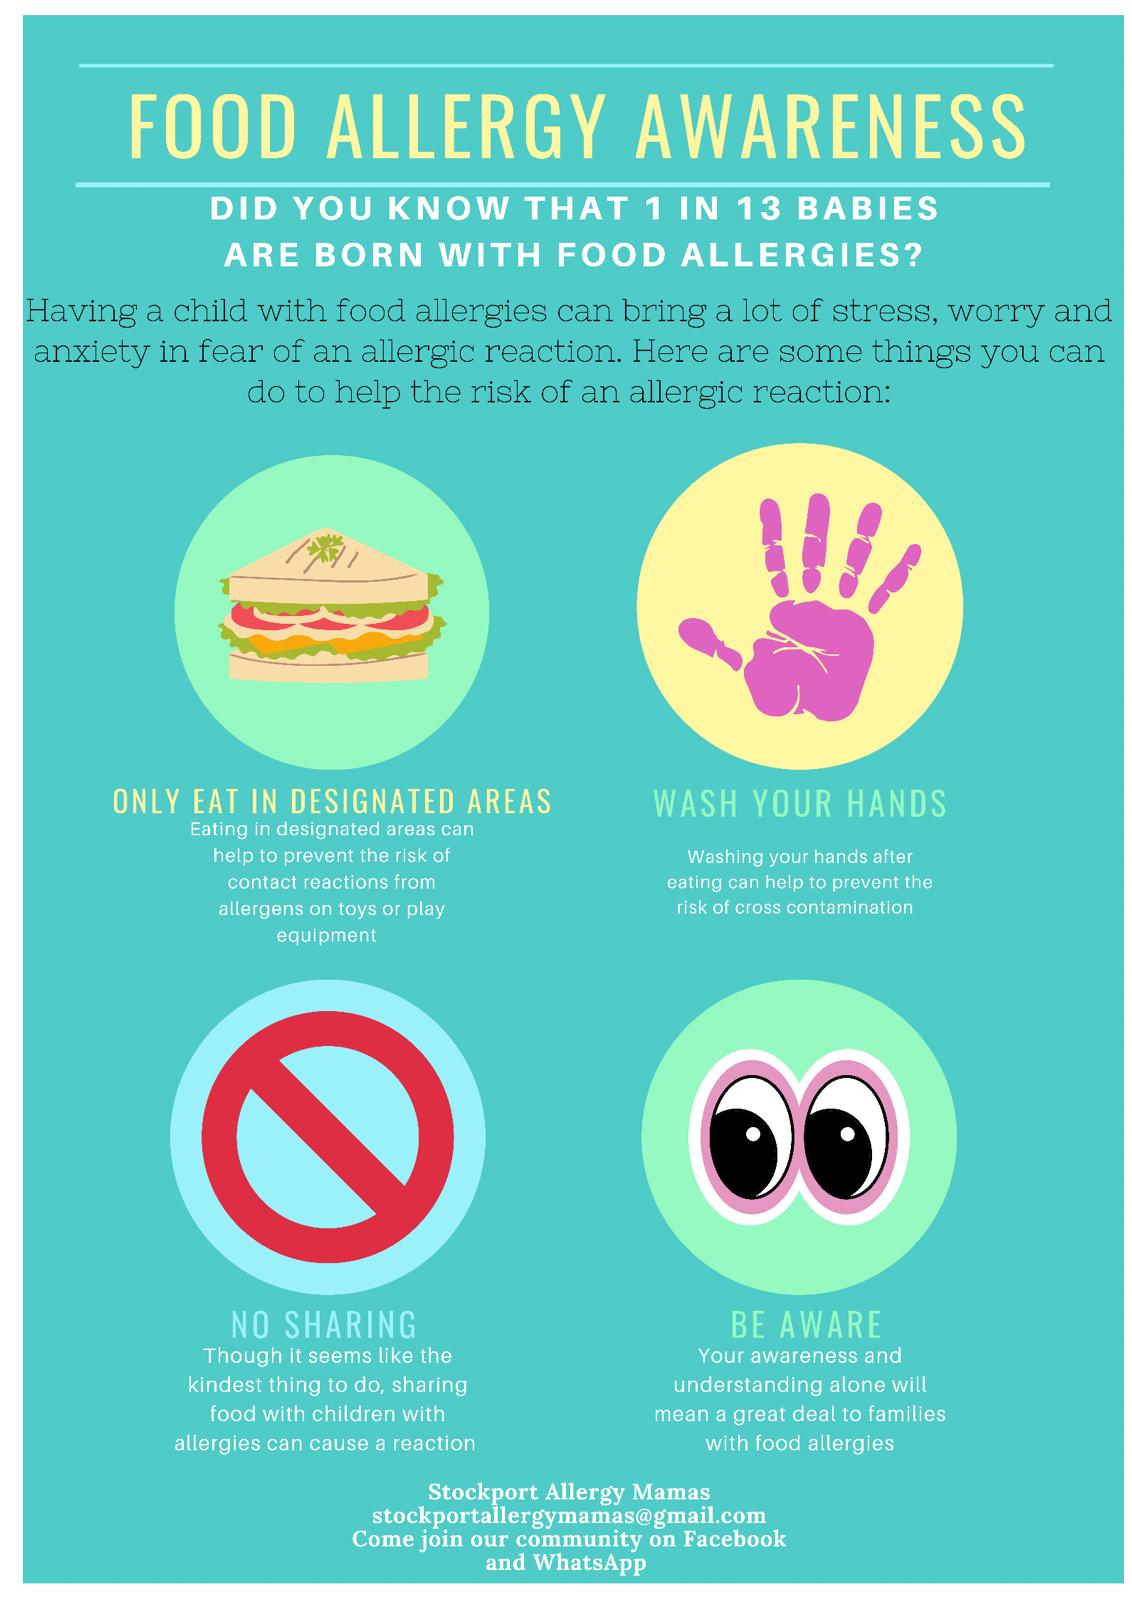 Childrens allergies